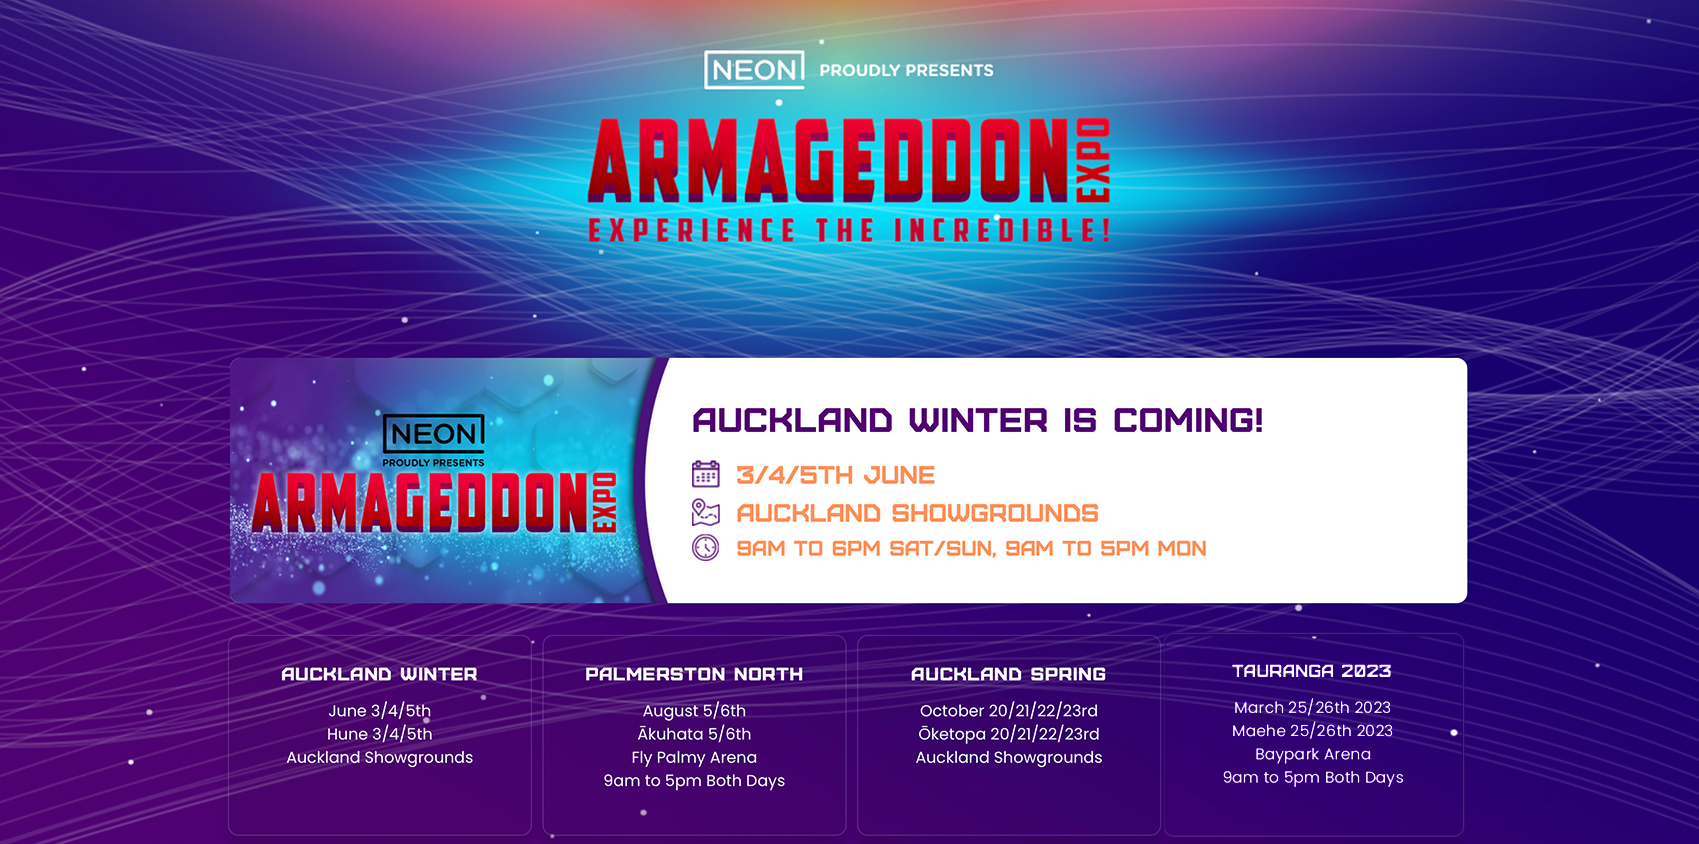 armageddon expo case study banner